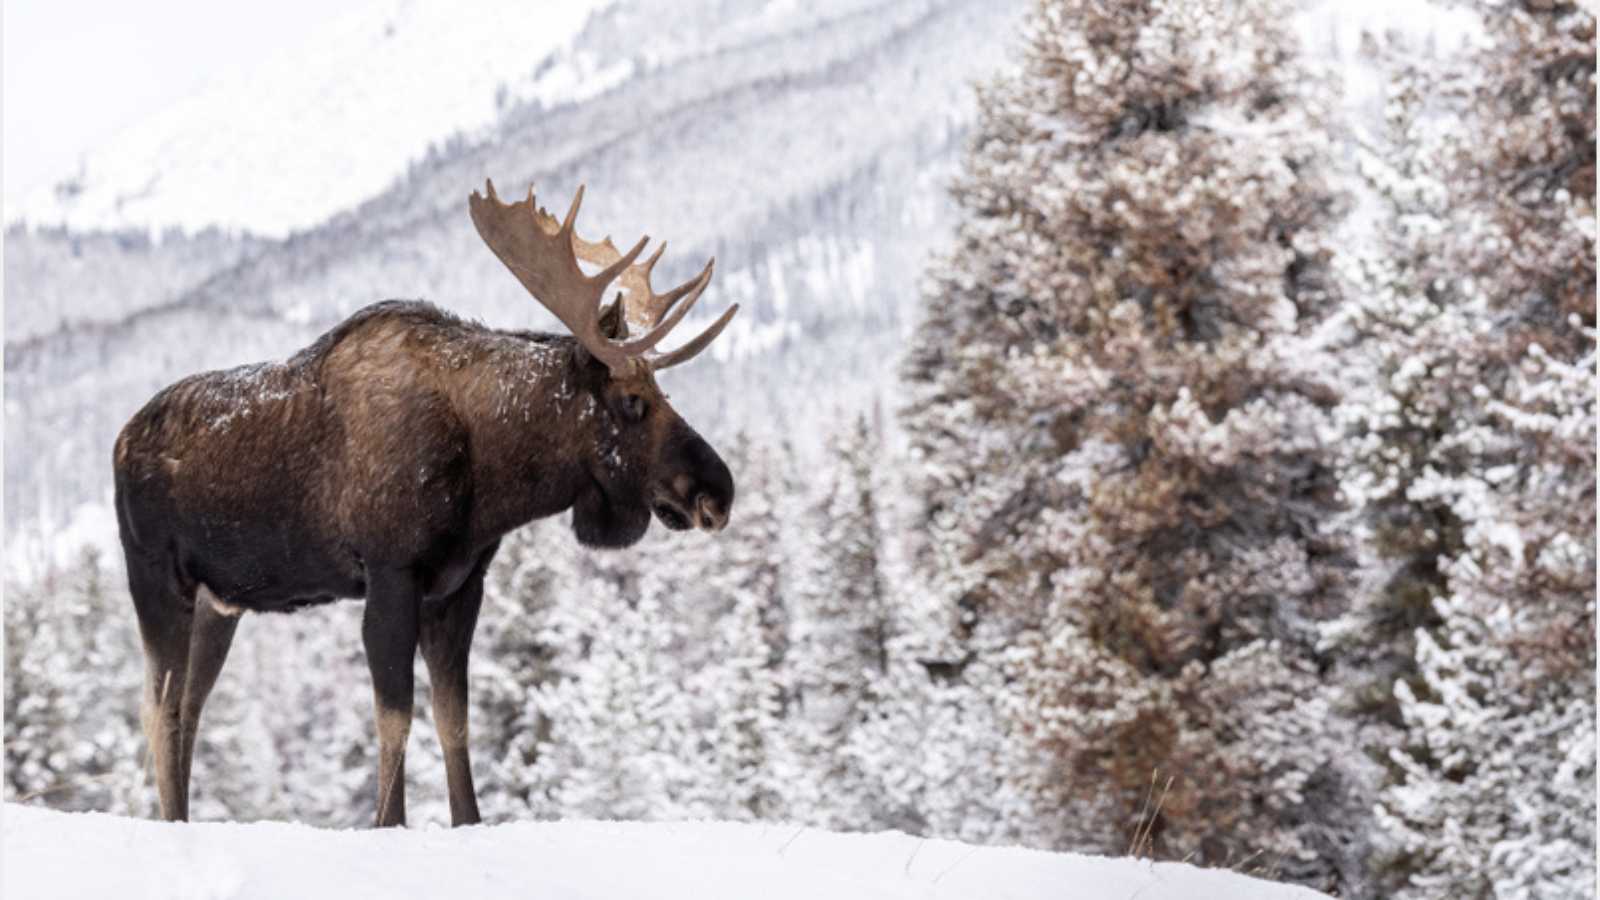 A moose in snow in Jasper Canada